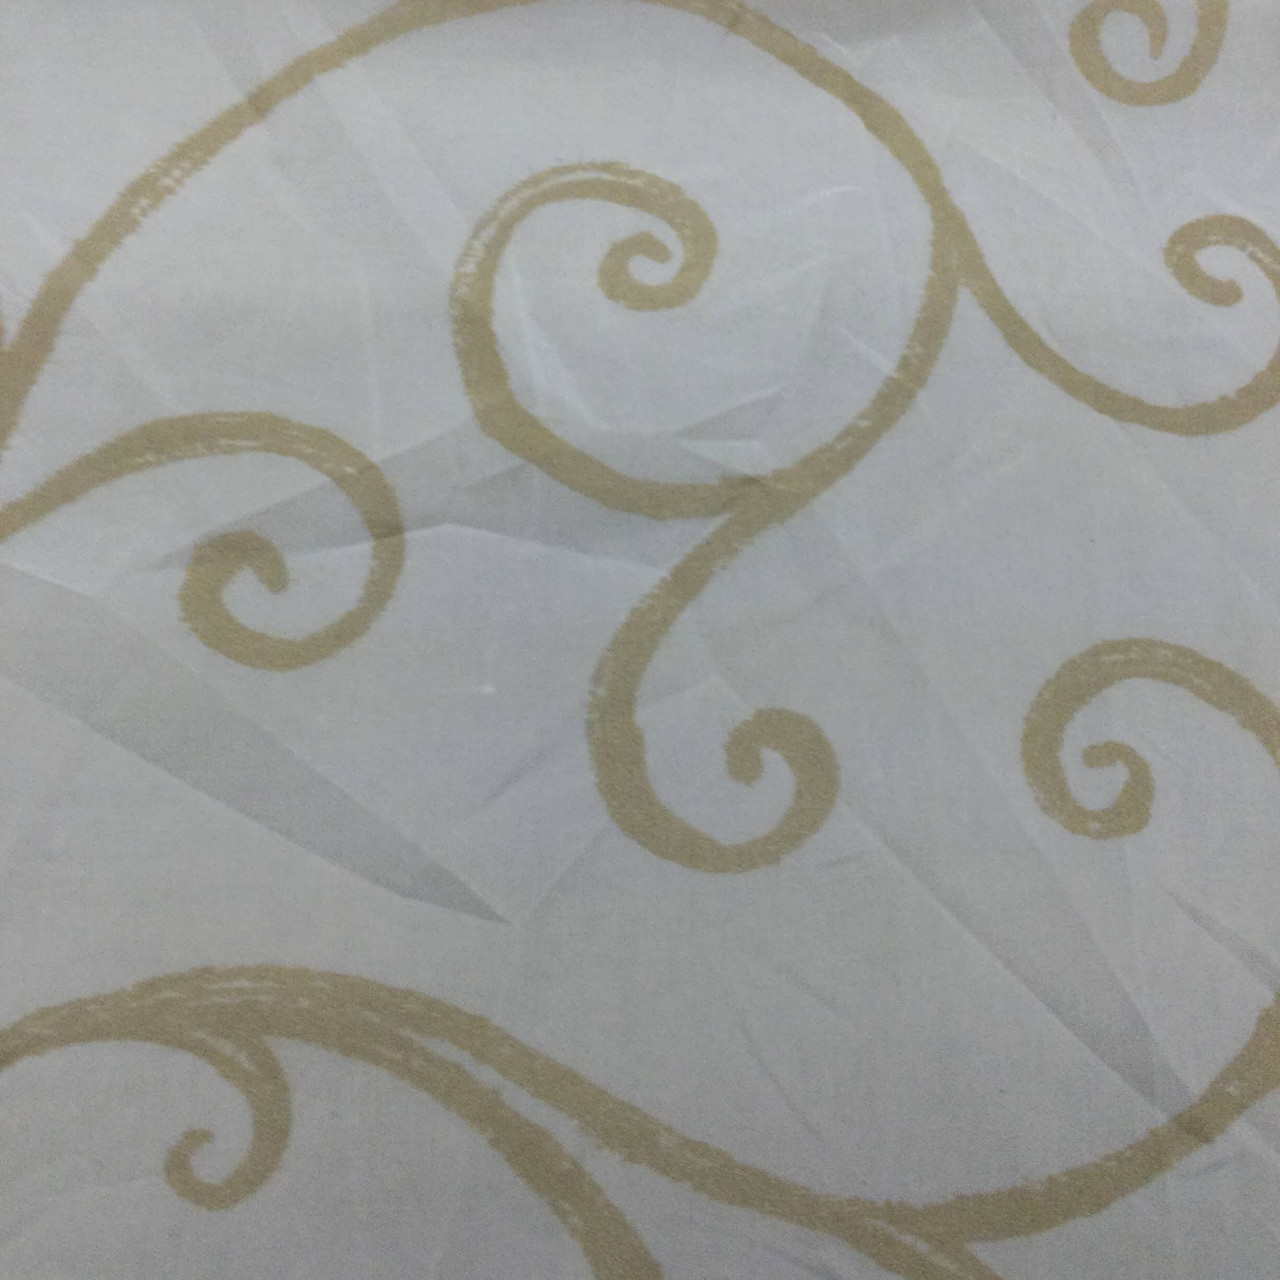 White paper lace and organza design